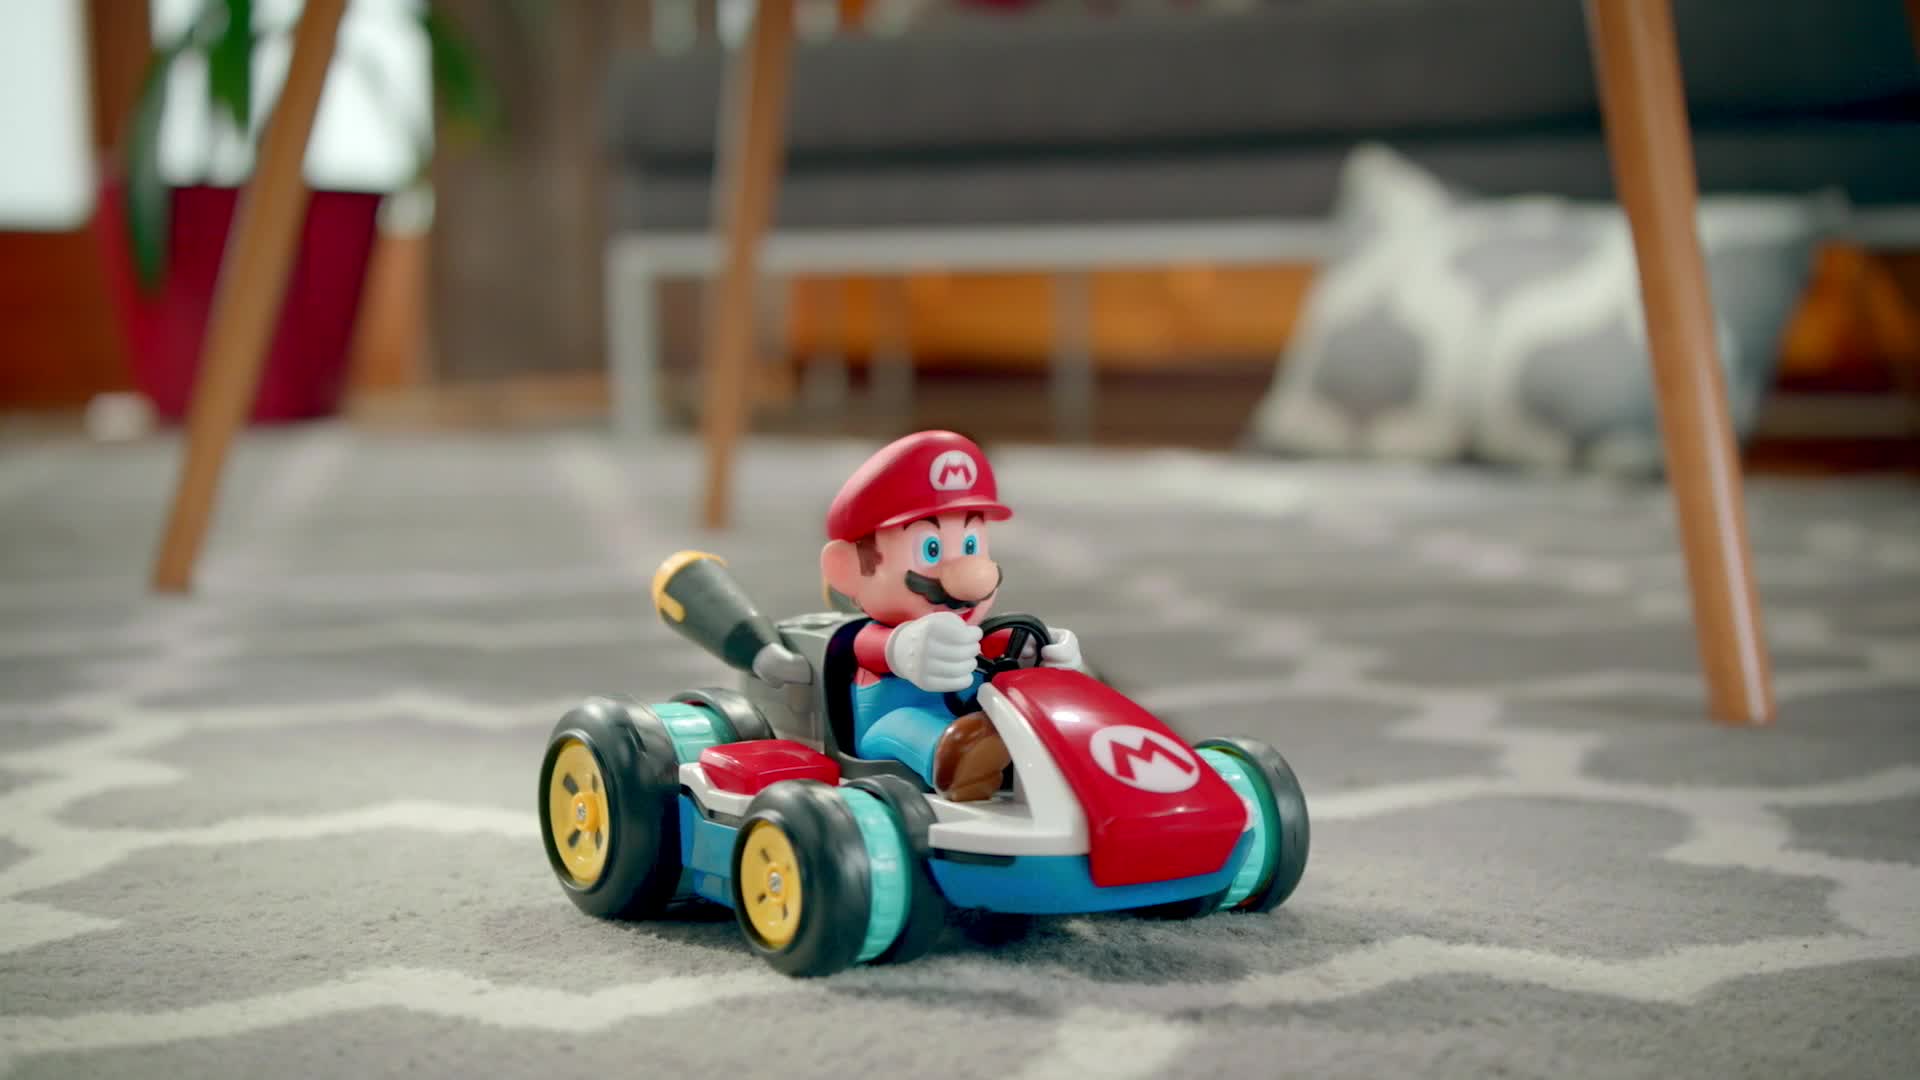 Nintendo - Super Mario Mini Voiture Télécommandée Anti-Gravité